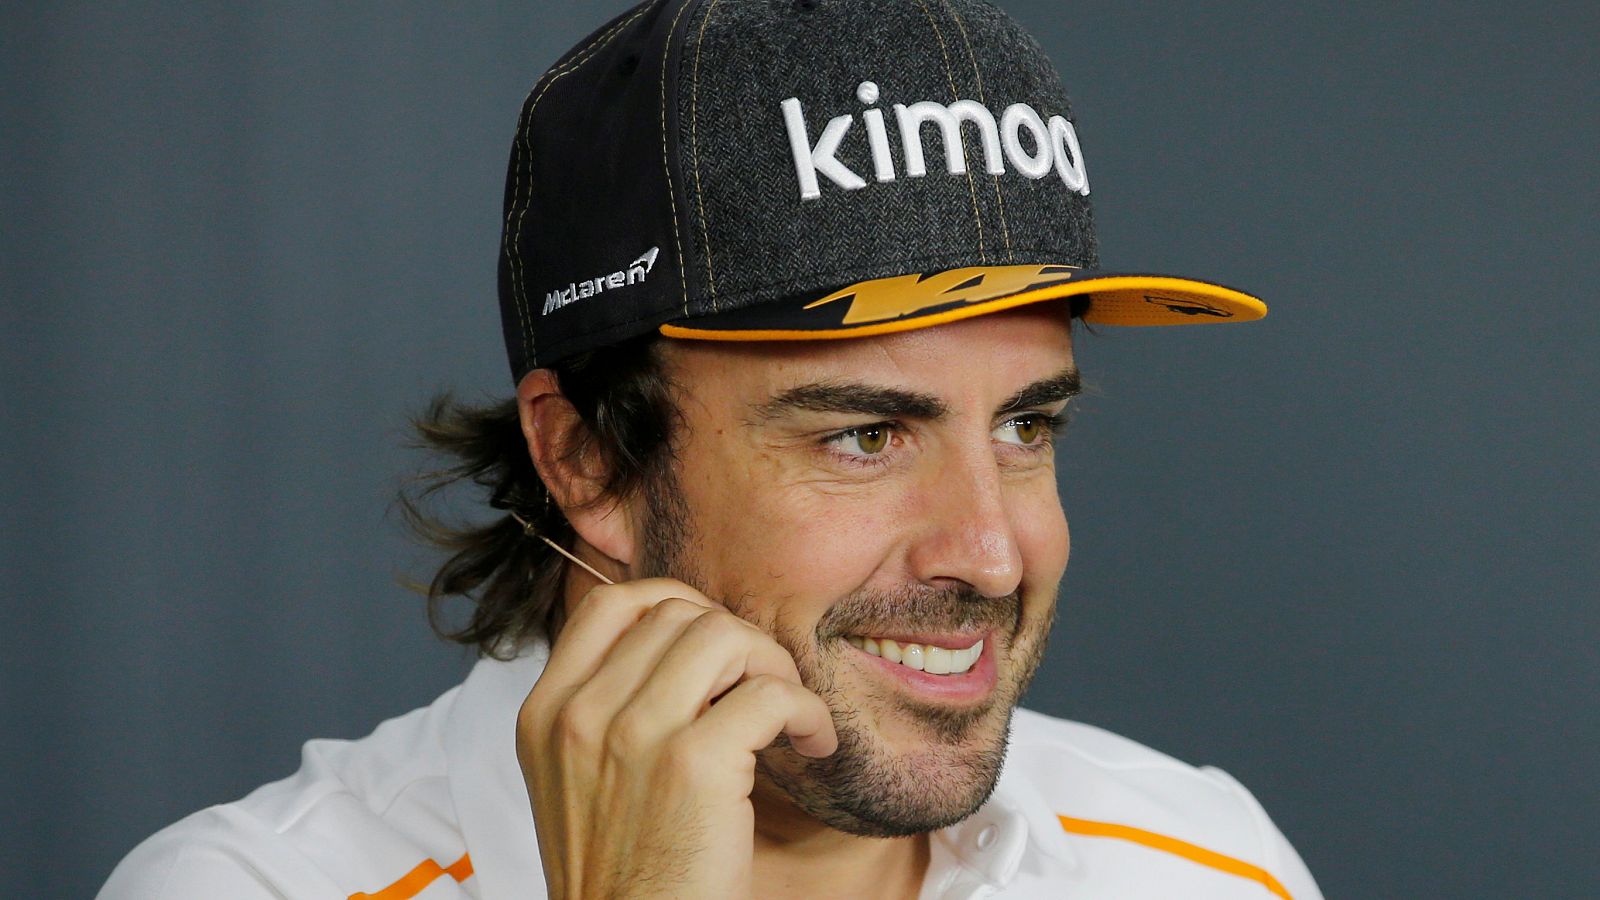 El piloto español Fernando Alonso, en imagen de archivo.